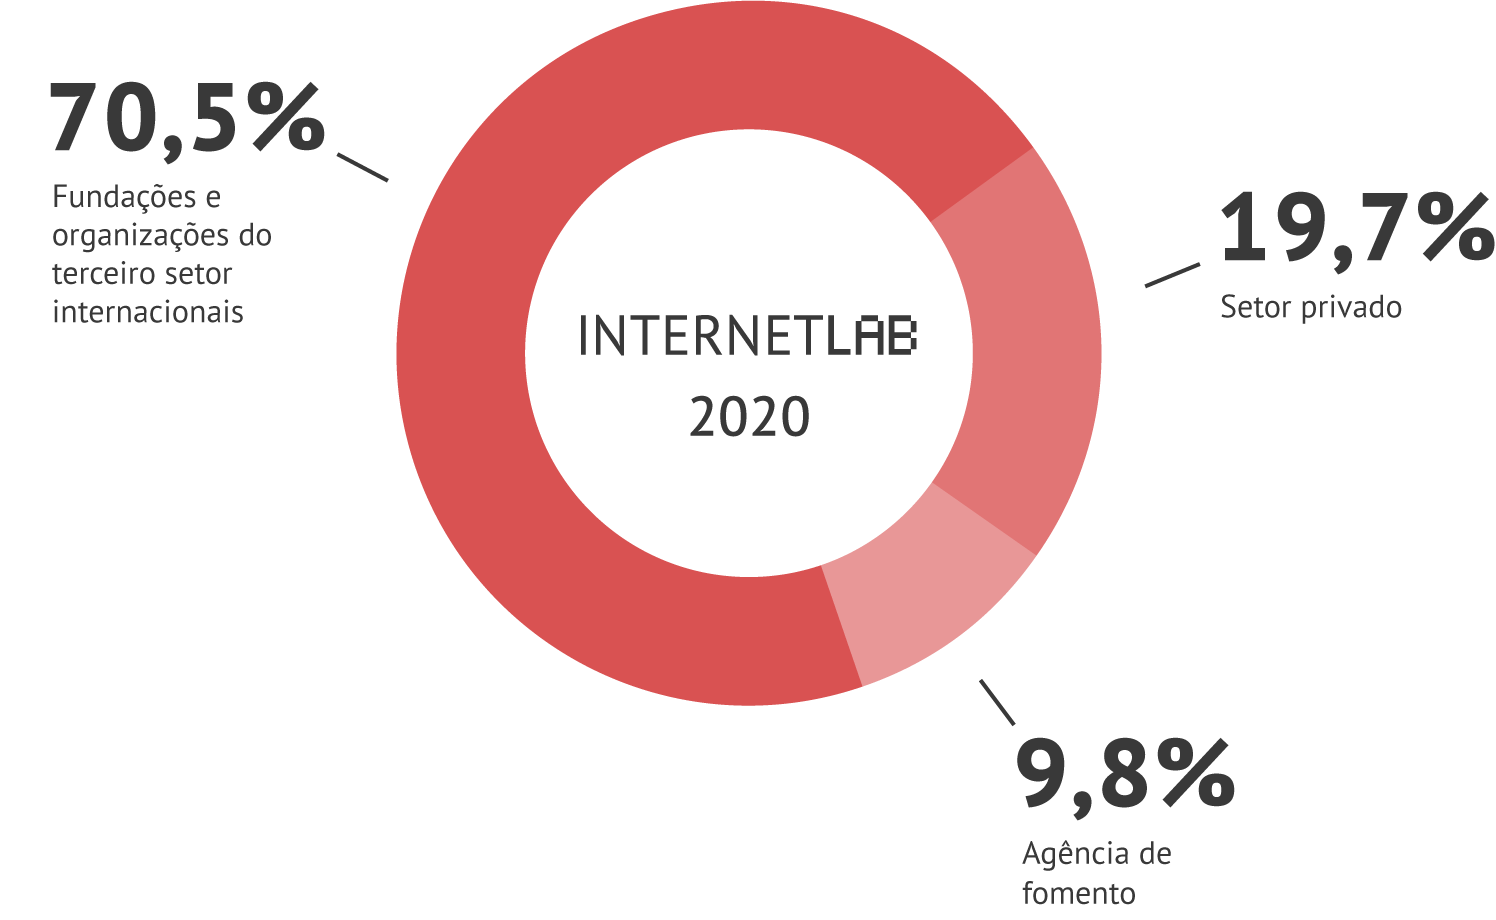 Gráfico em pizza com as informações de fontes de financiamento do InternetLab em 2020. Sendo 70,5% vindo de fundações e organizações do terceiro setor internacionais, 9,8% de agências de fomento e 19,7% do setor privado.